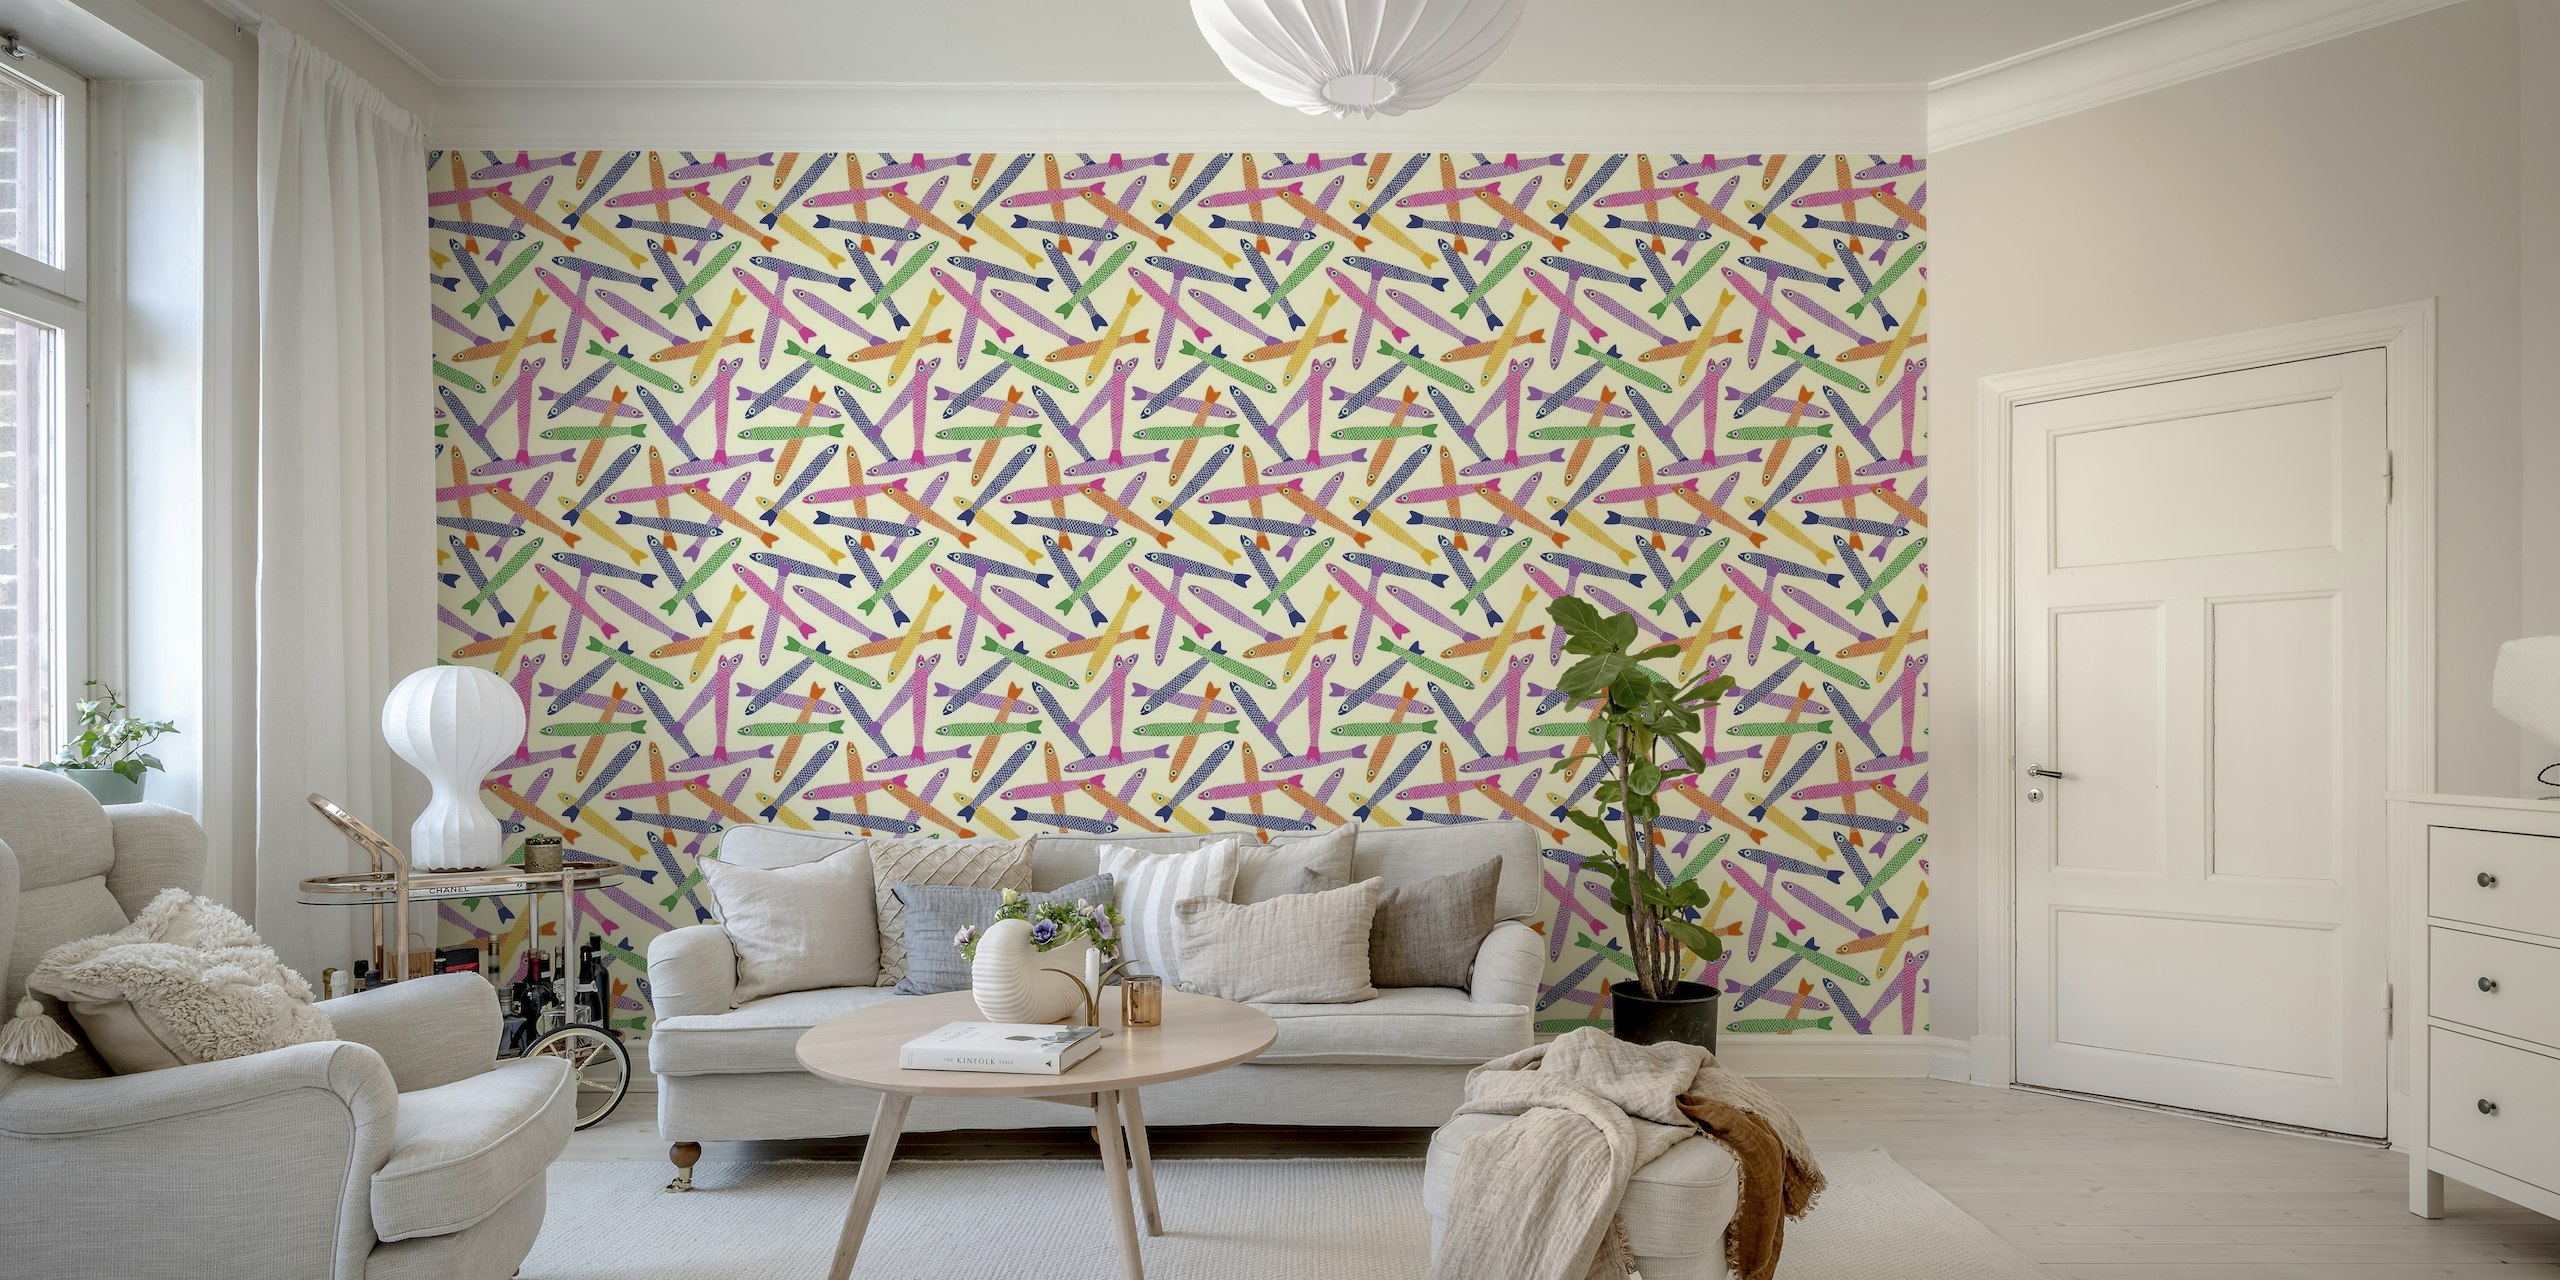 Kleurrijke ansjovisvispatronen op een crèmekleurige muurschildering